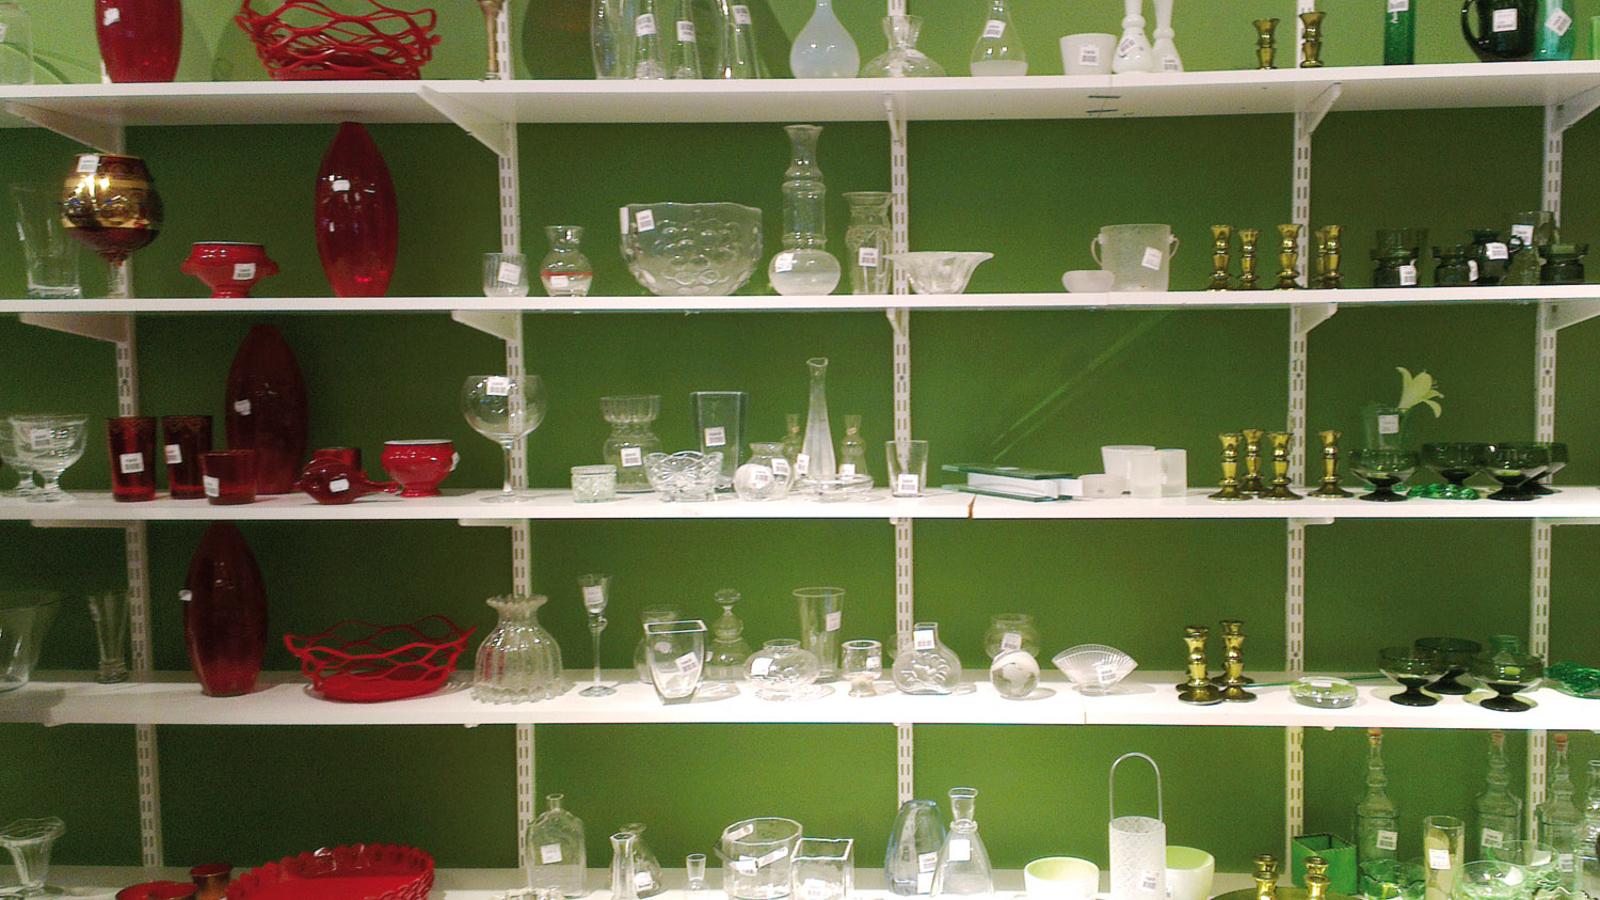 Hyllor mot en grön vägg. På hyllorna står det brickor, vaser, skålar och dekorationer i glas.